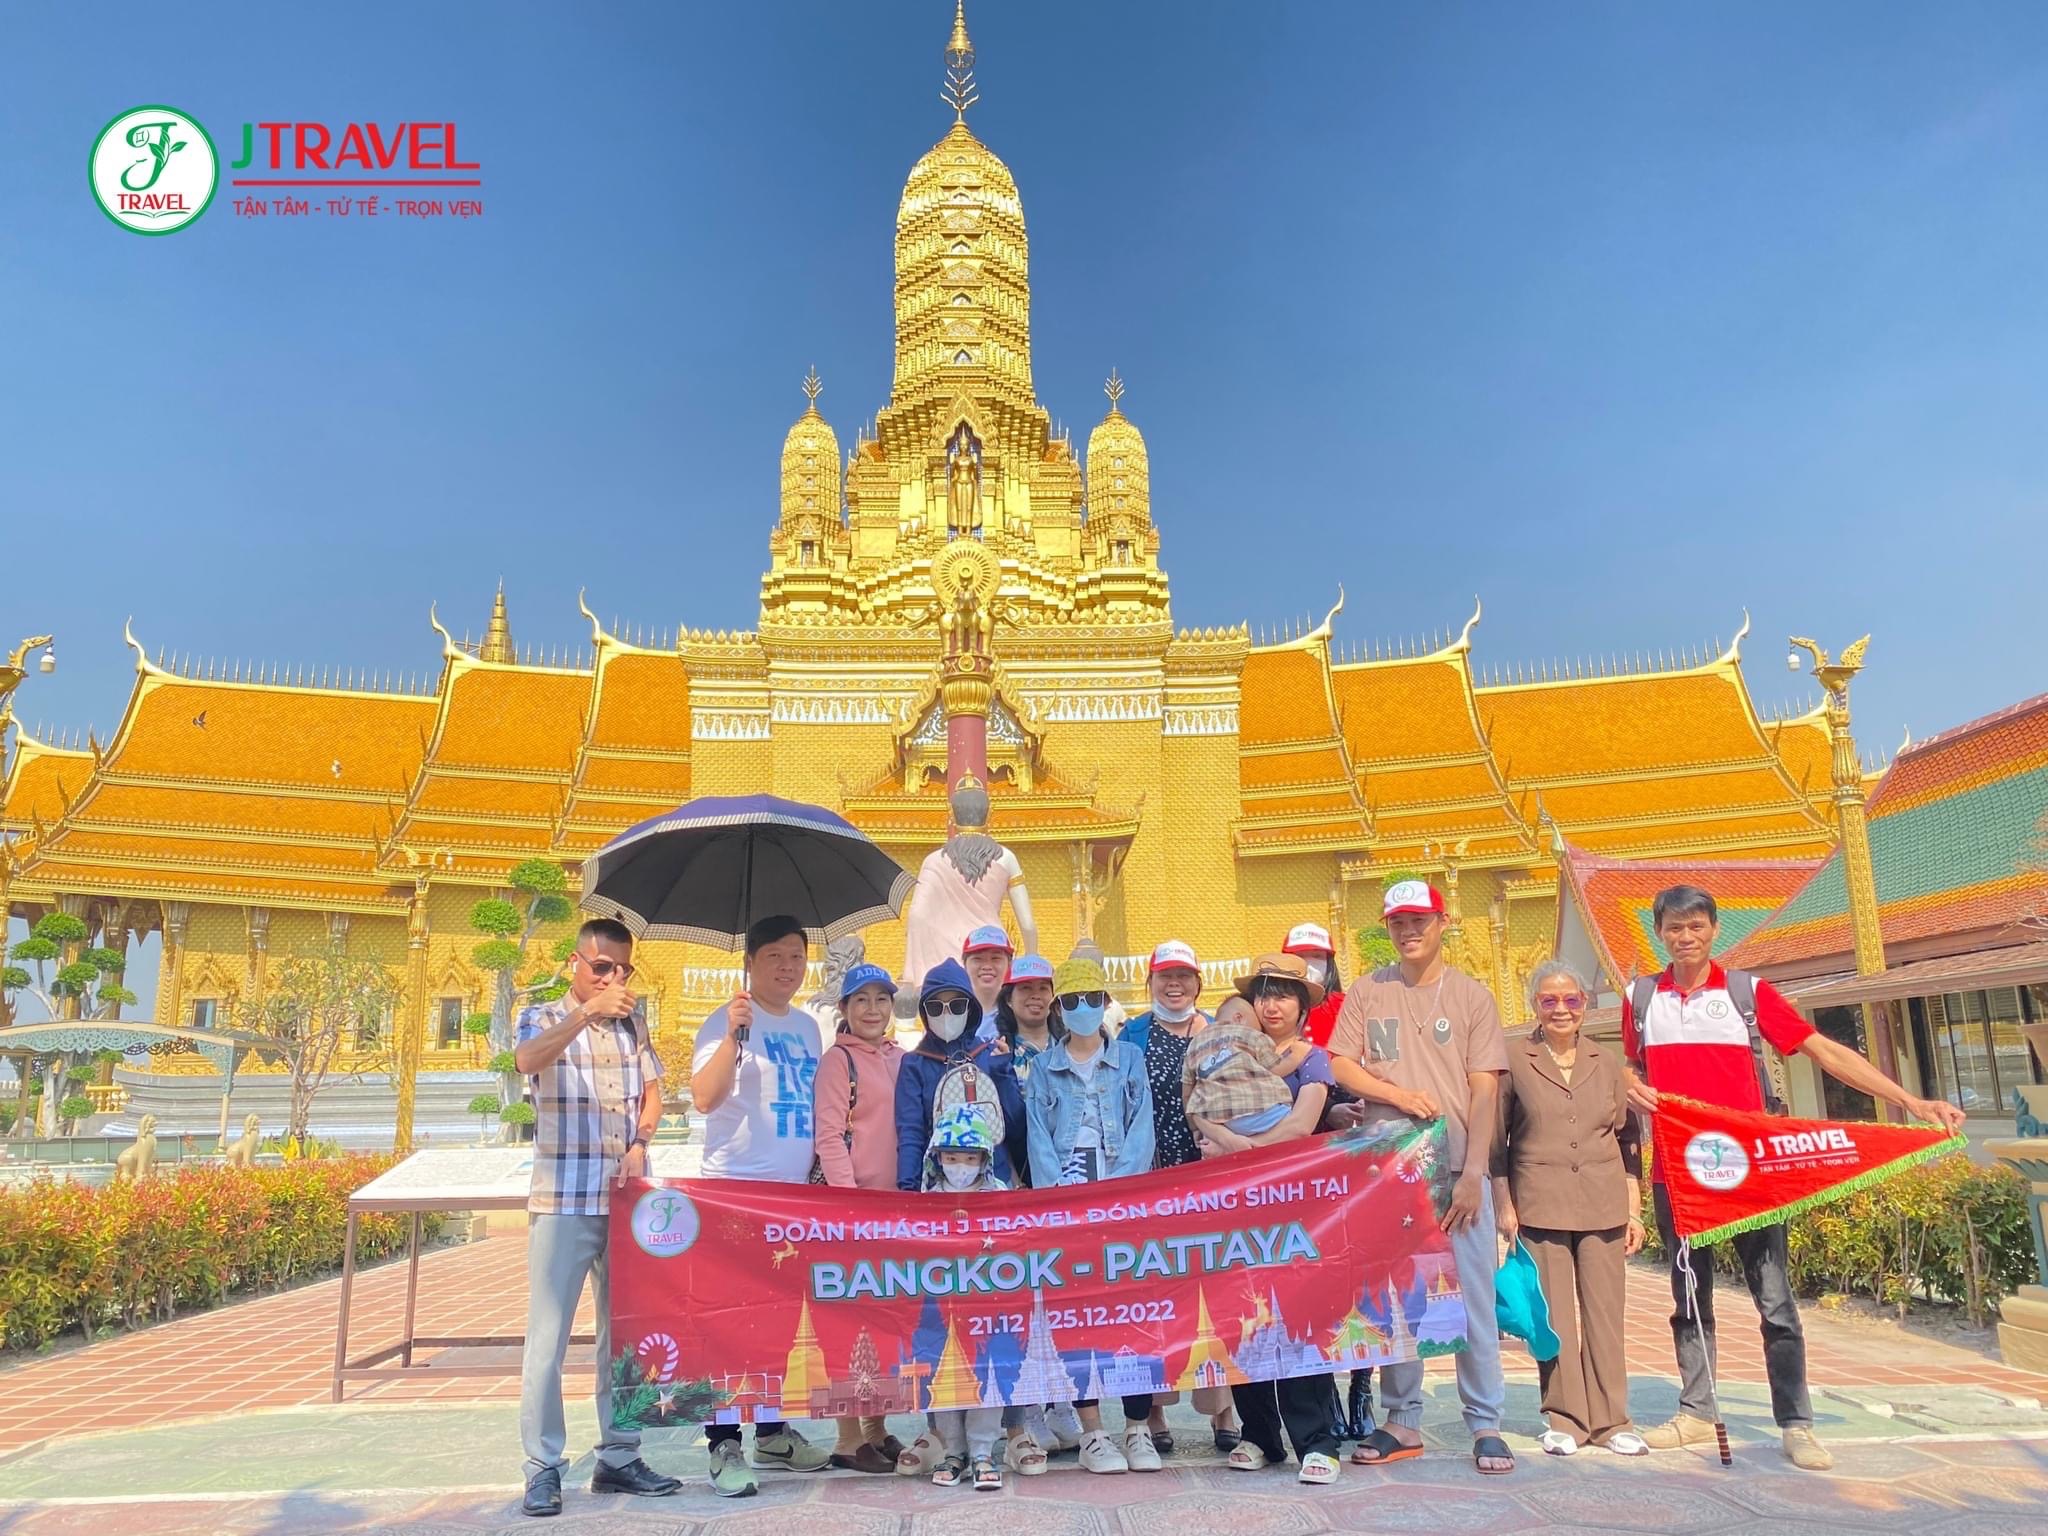 doan-j-travel-trai-nghiem-tour-thai-lan-21-12-25-12-2022-1.jpg